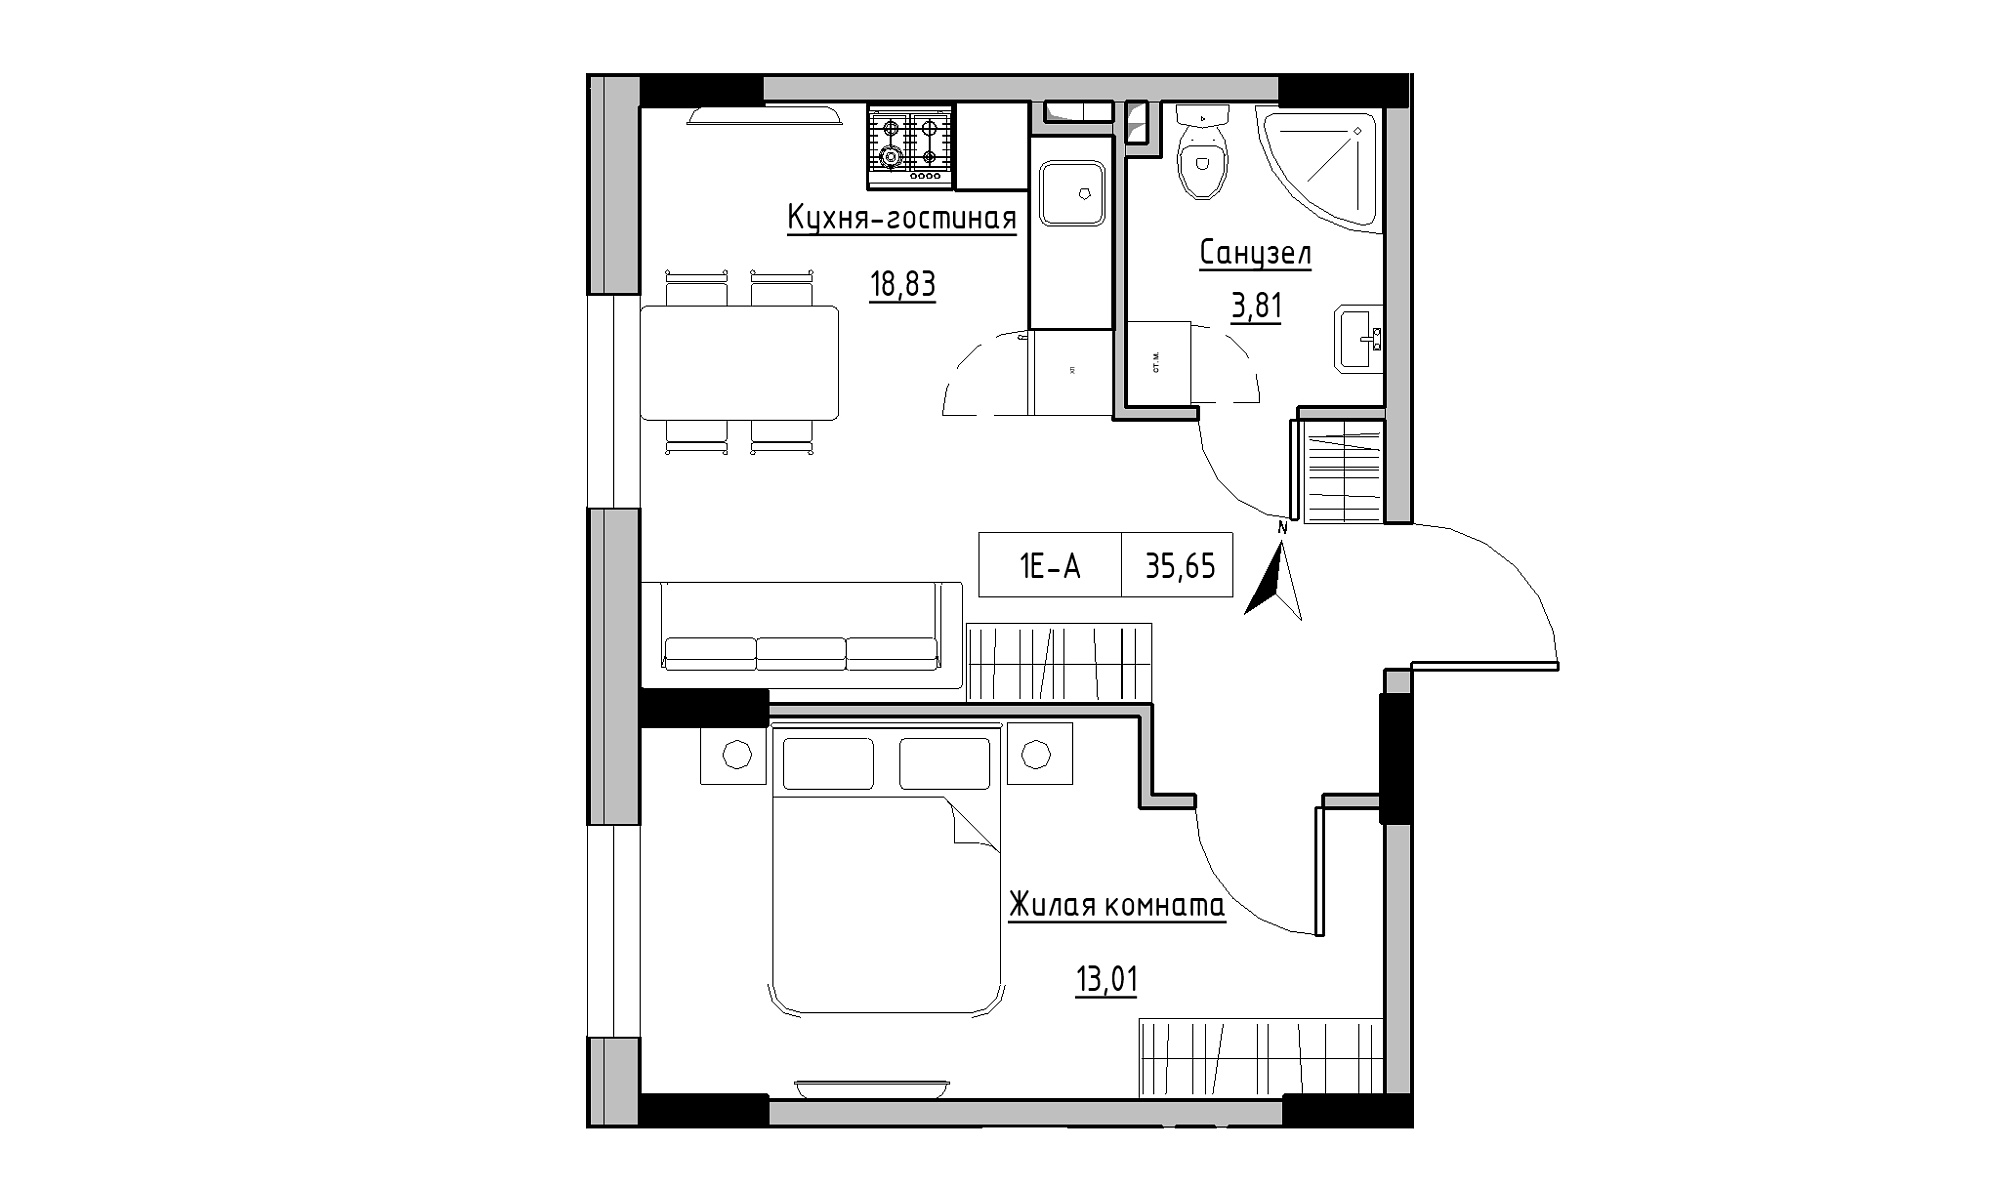 Планировка 1-к квартира площей 35.65м2, KS-025-01/0004.